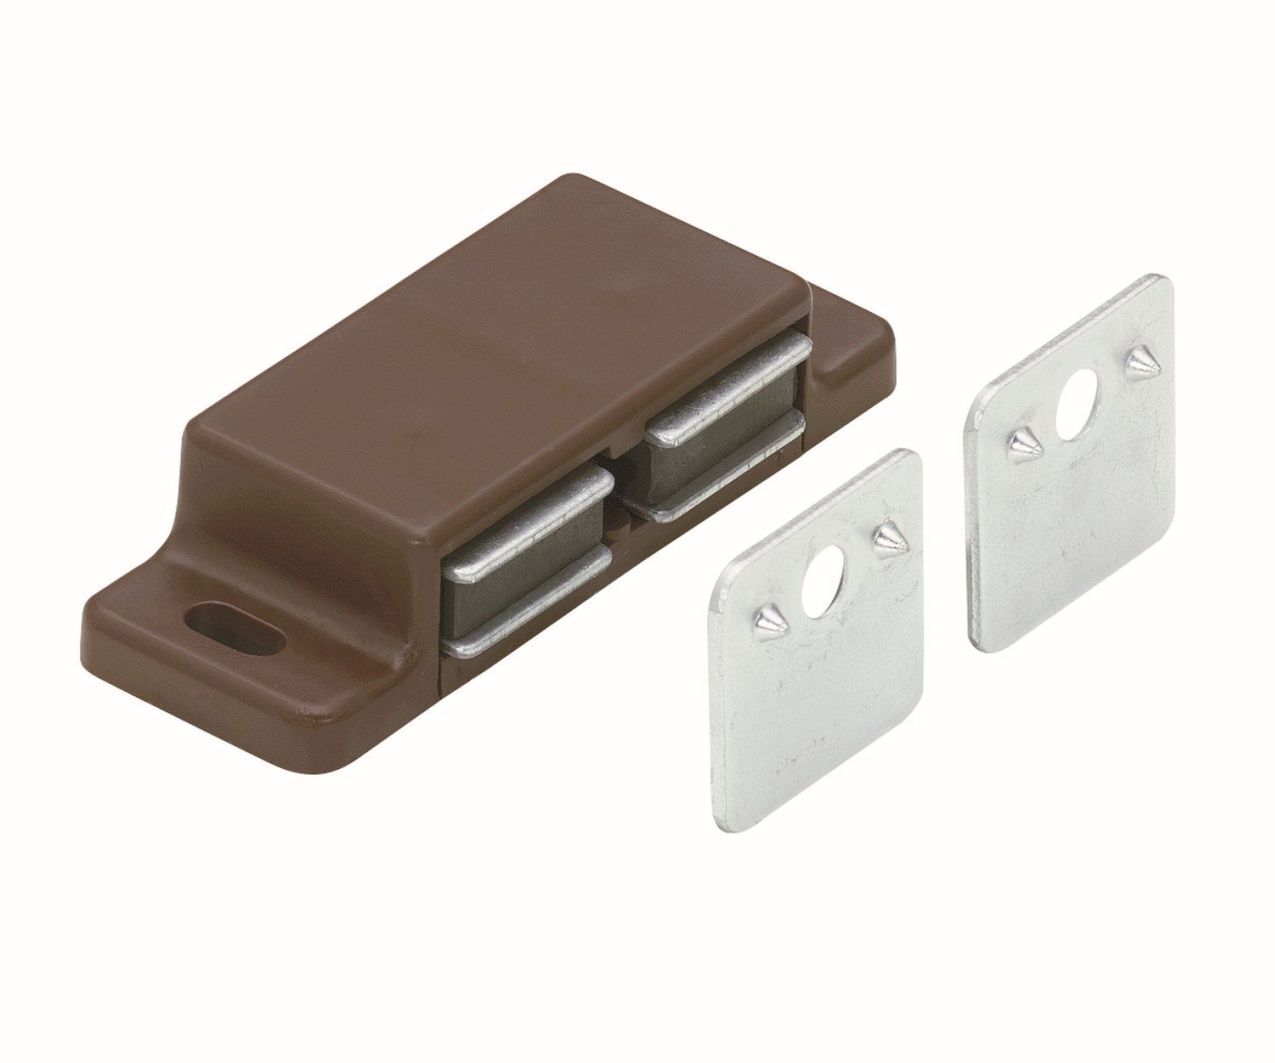 Magnetschnäpper 2×2-3 kg mit zwei Gegenplatten für zwei Türen 58 x 14 x 21 mm 2×2-3 kg verzinkt braun